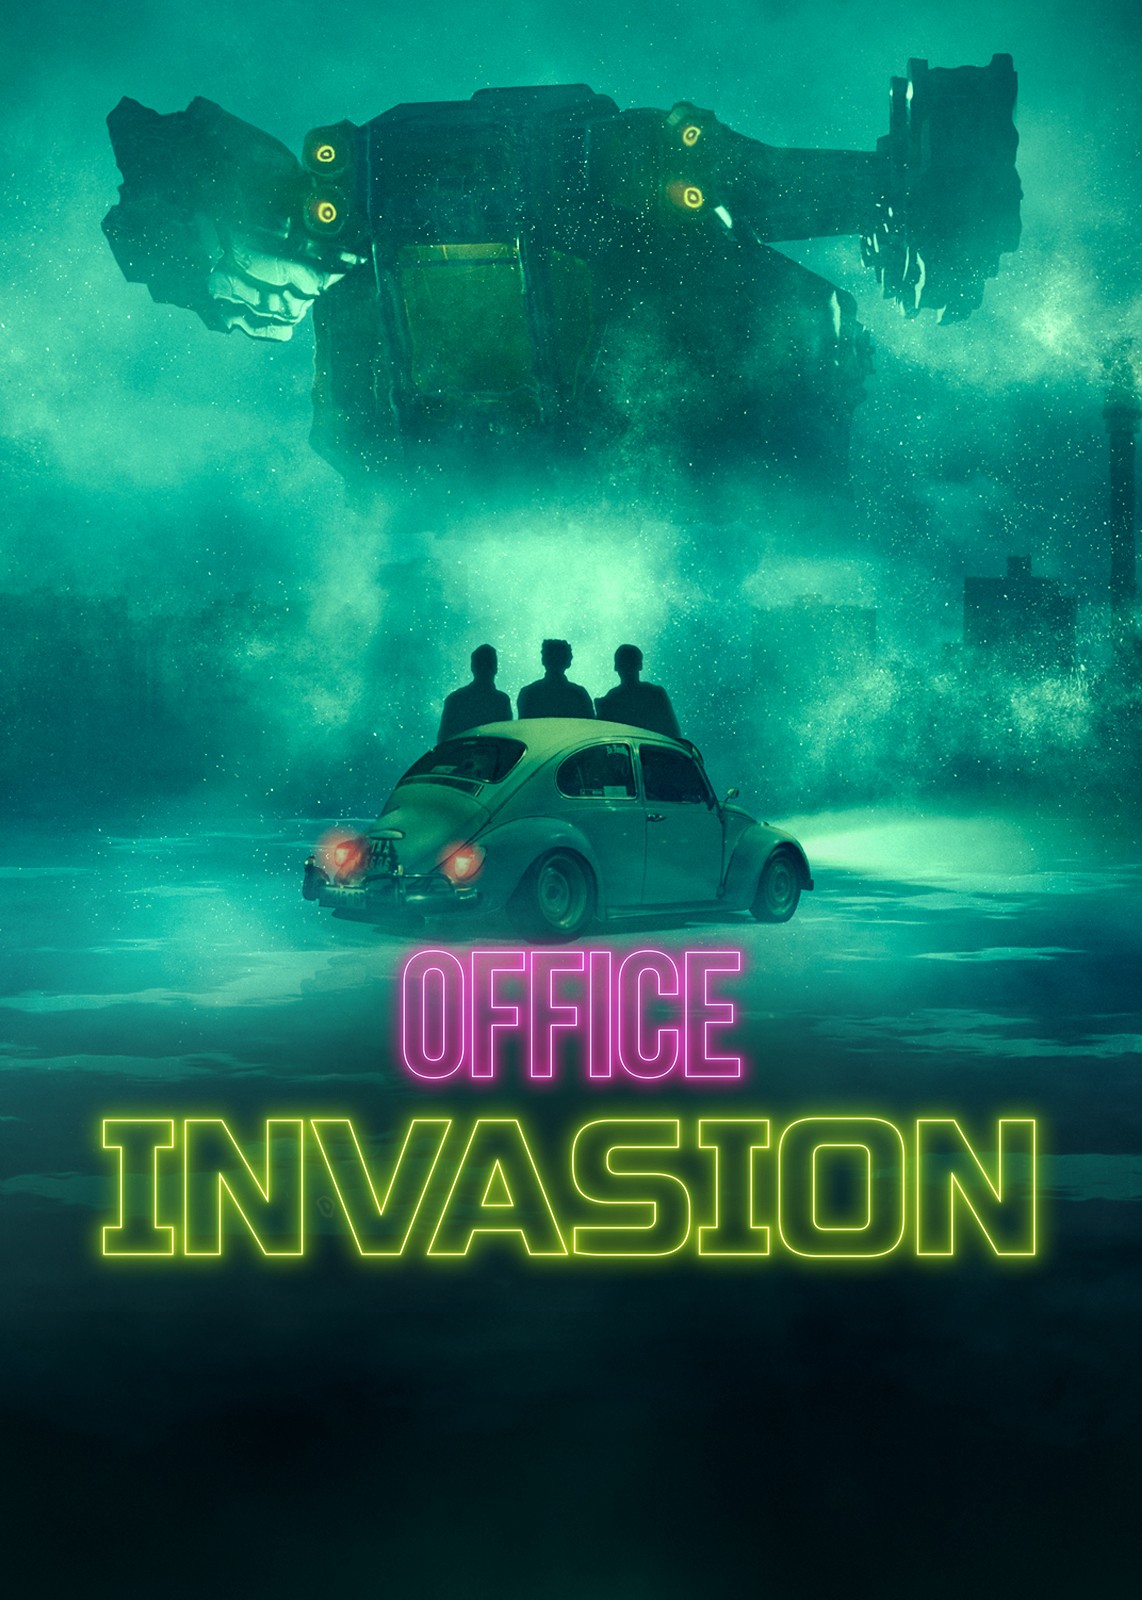 Cuộc xâm lăng văn phòng - Cuộc xâm lăng văn phòng